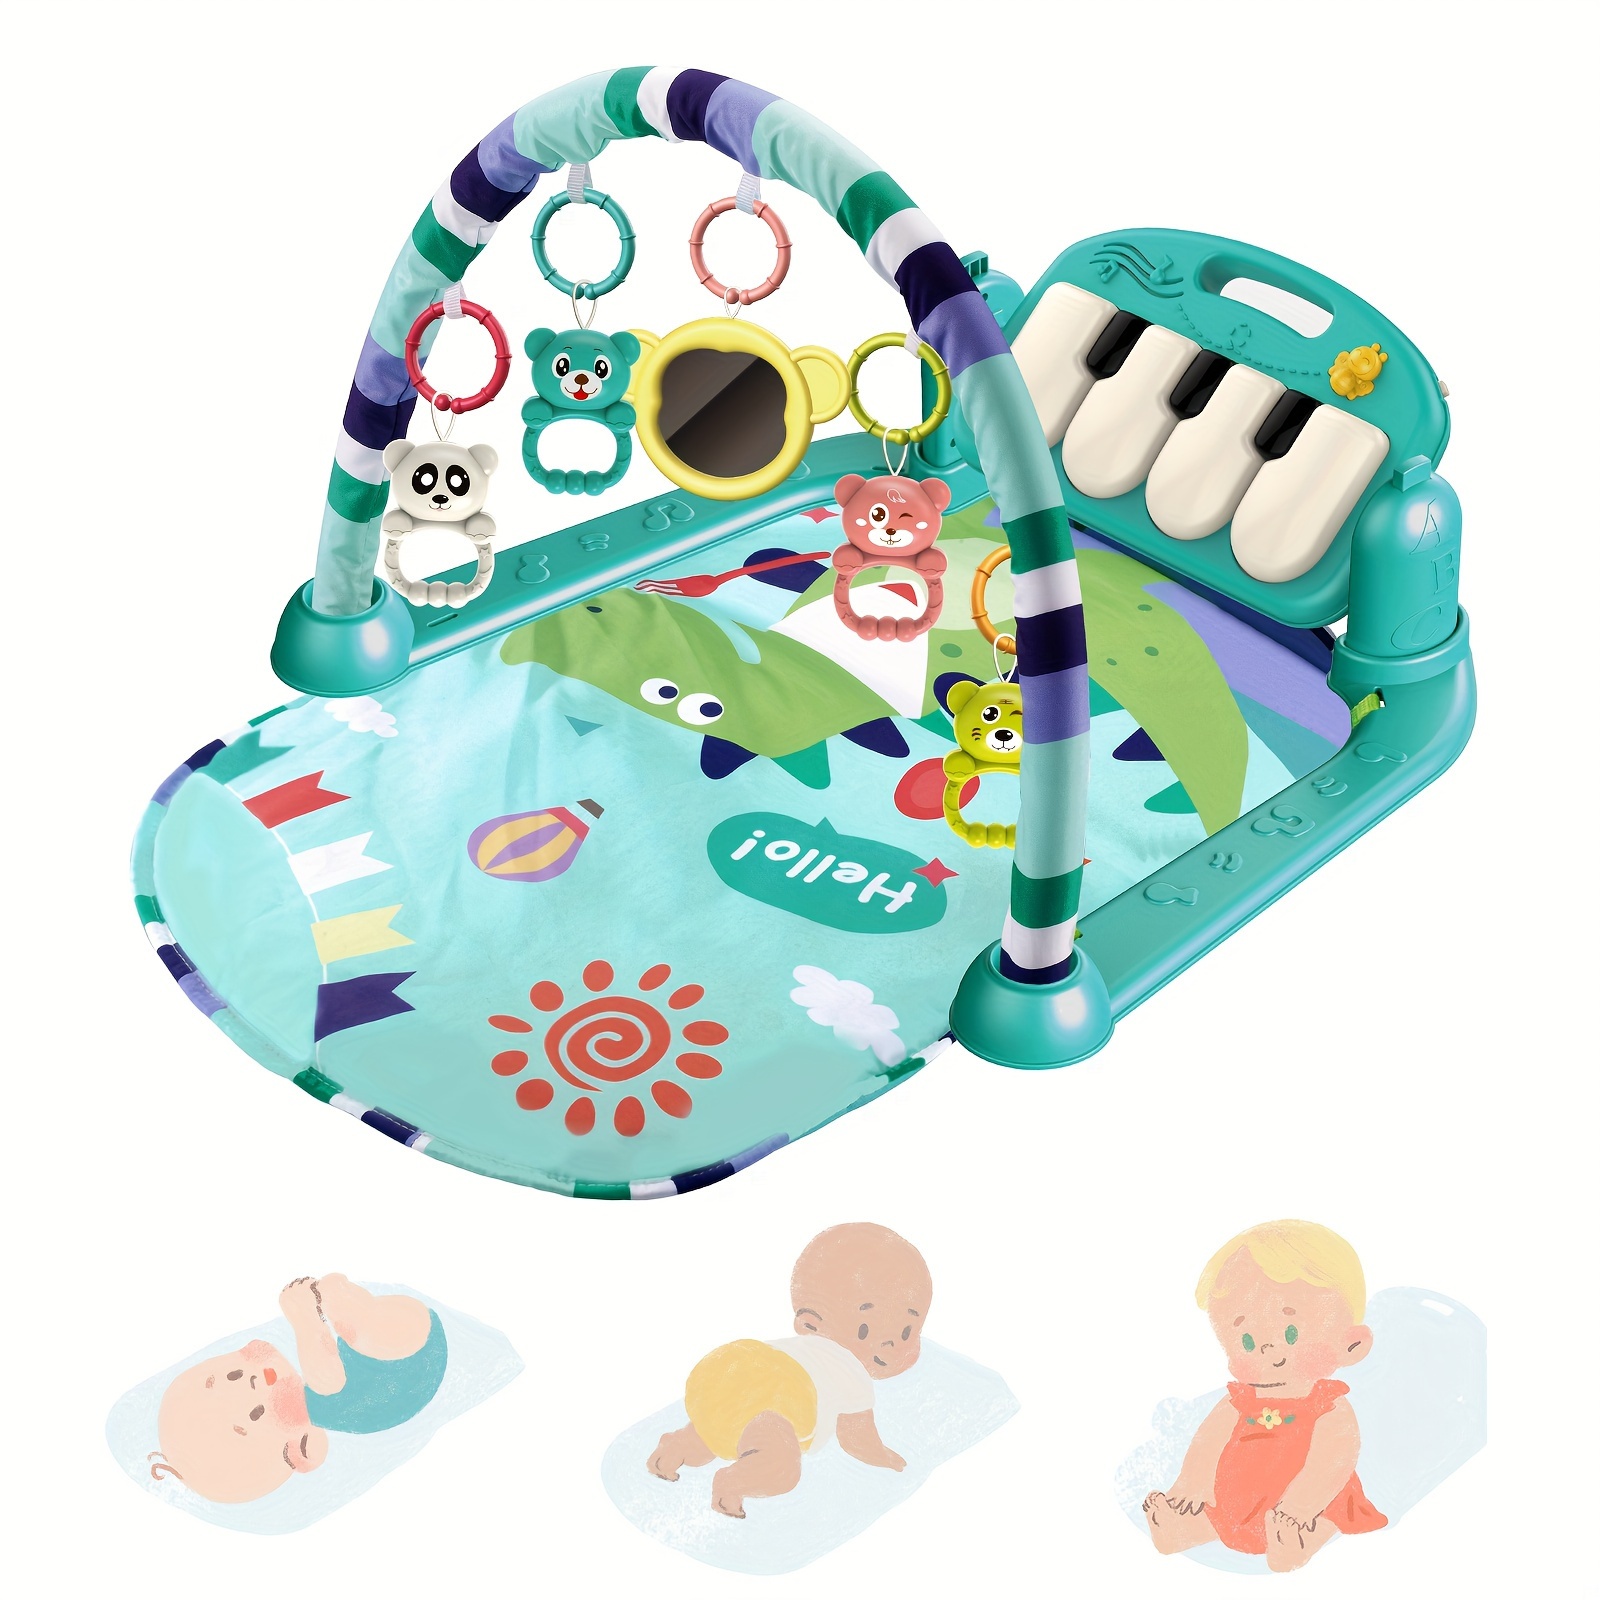 Alfombra de juego para bebés: gimnasio de actividades para bebés más grande  y grueso con 5 juguetes de peluche desmontables y una manta de juego para